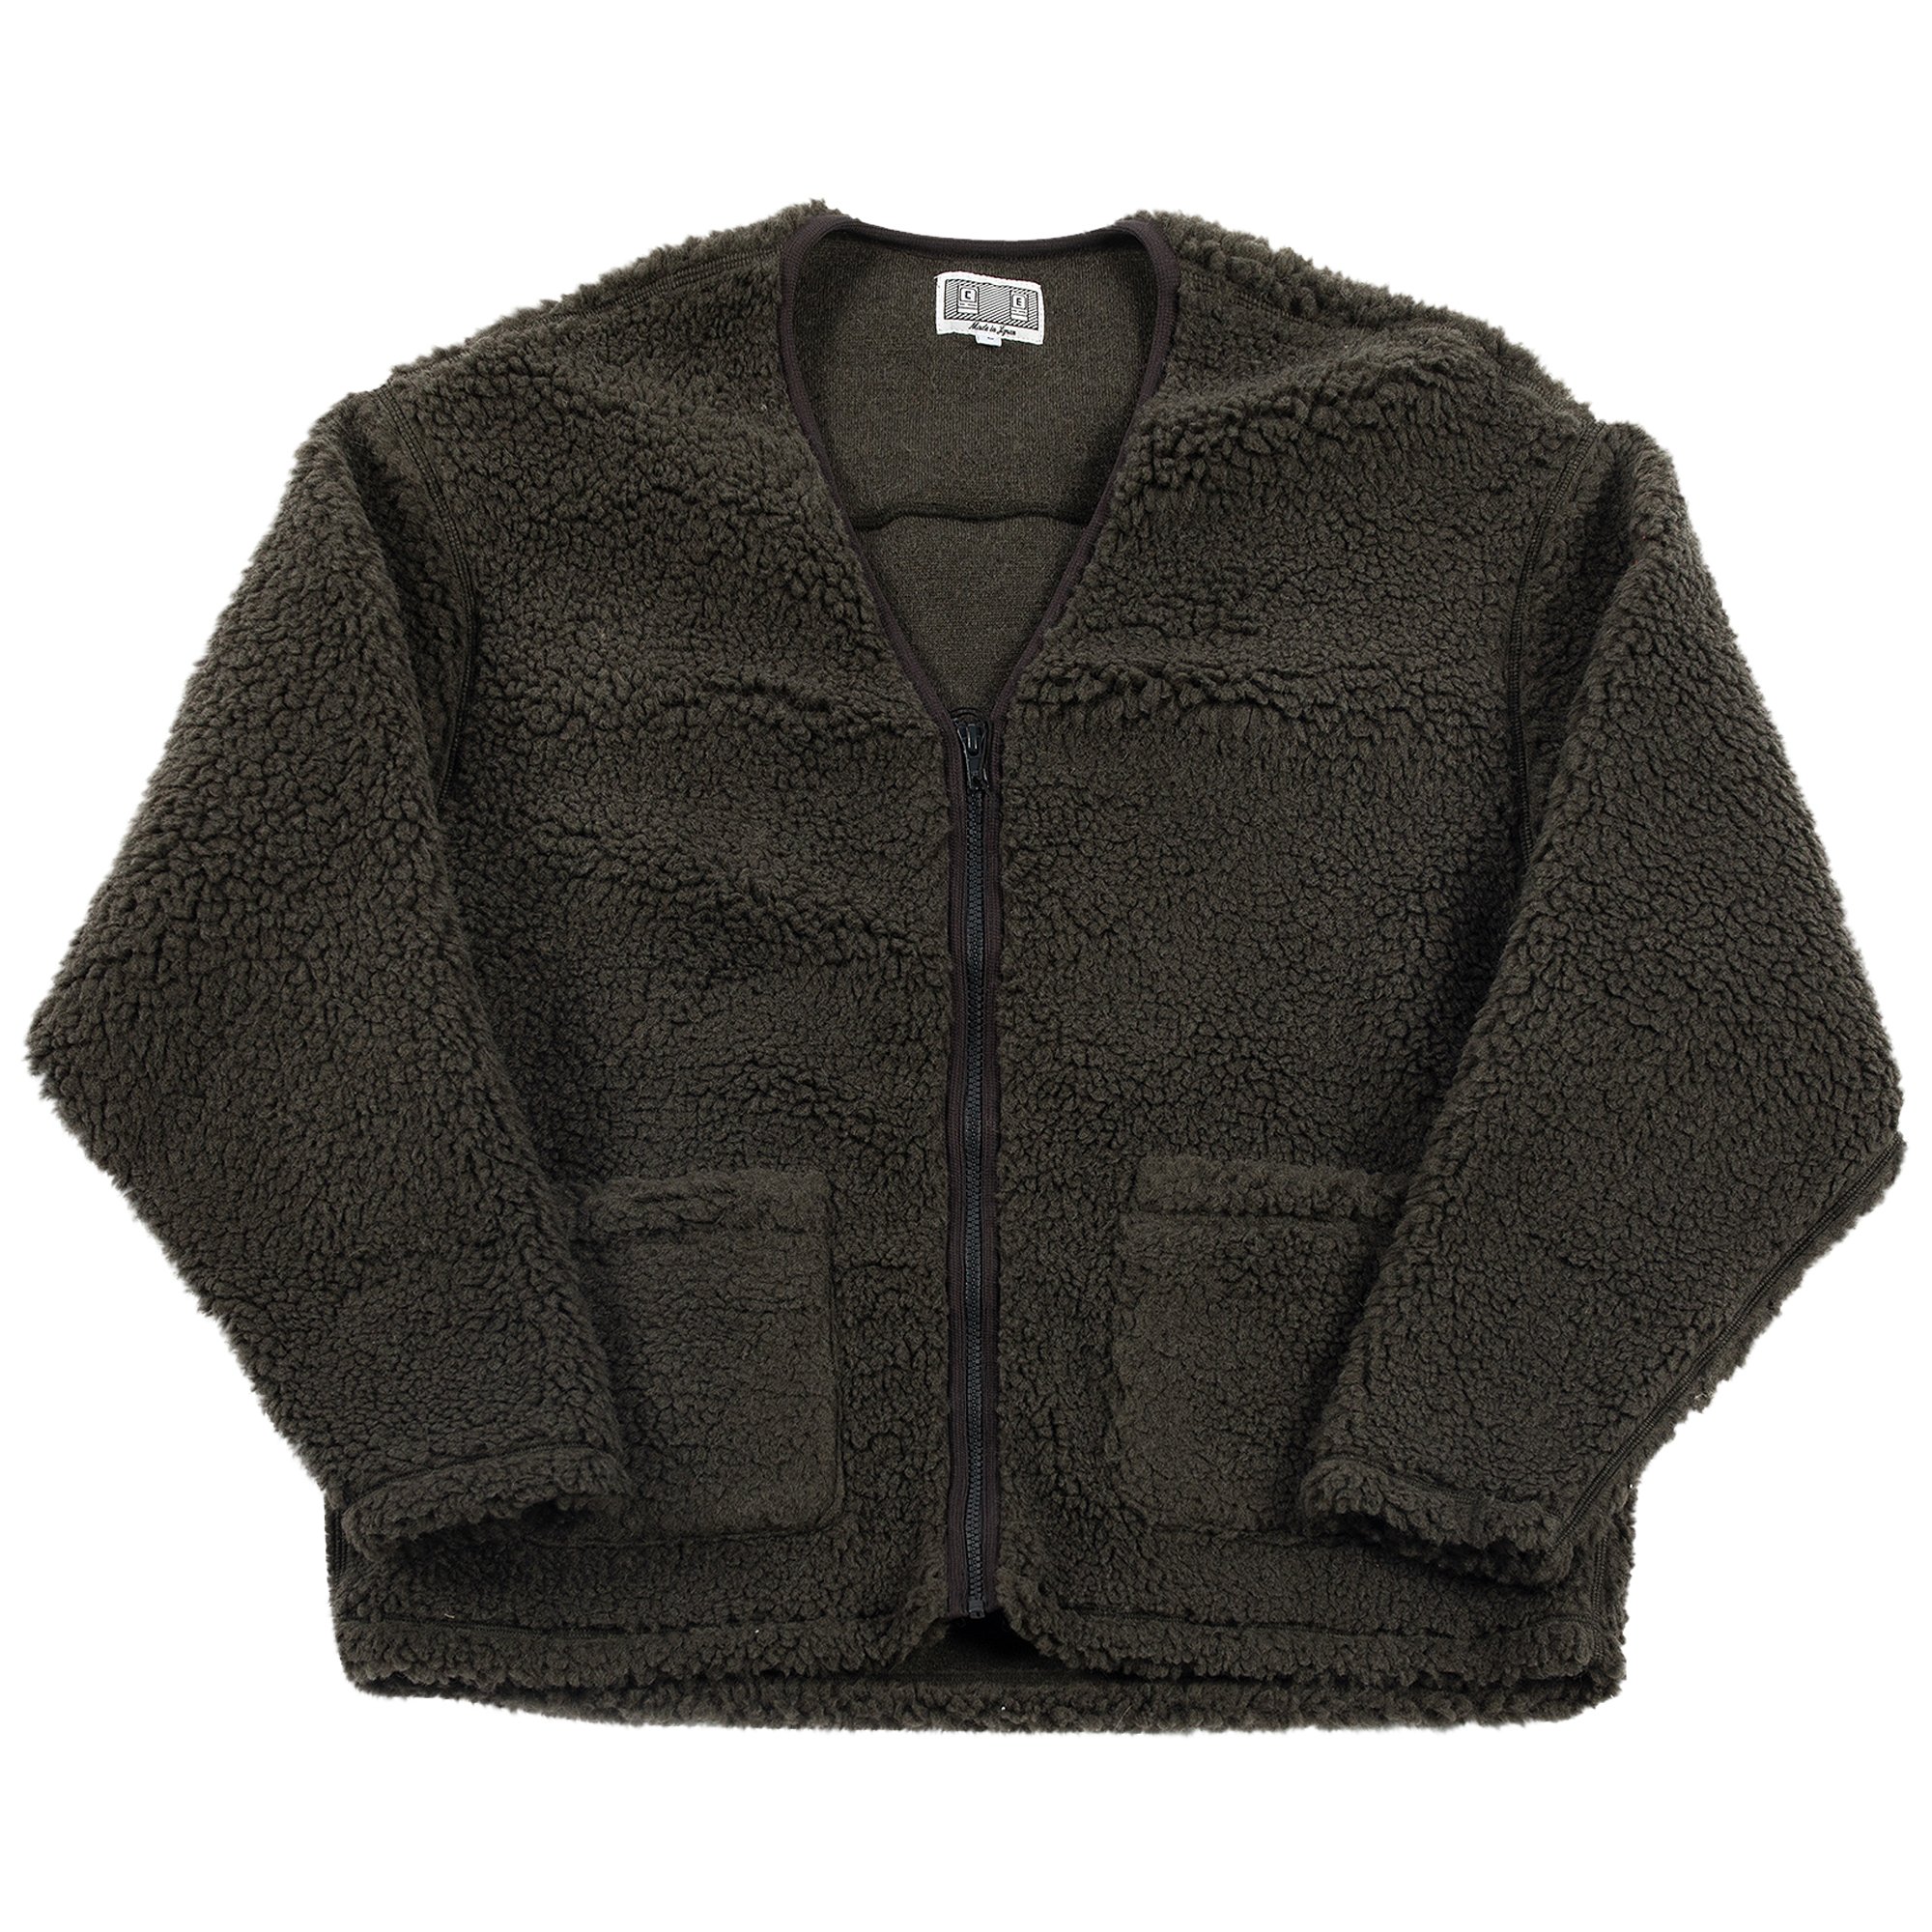 Buy Cav Empt Boa Fleece Zip Up Cardigan 'Charcoal' - CES21CS22 